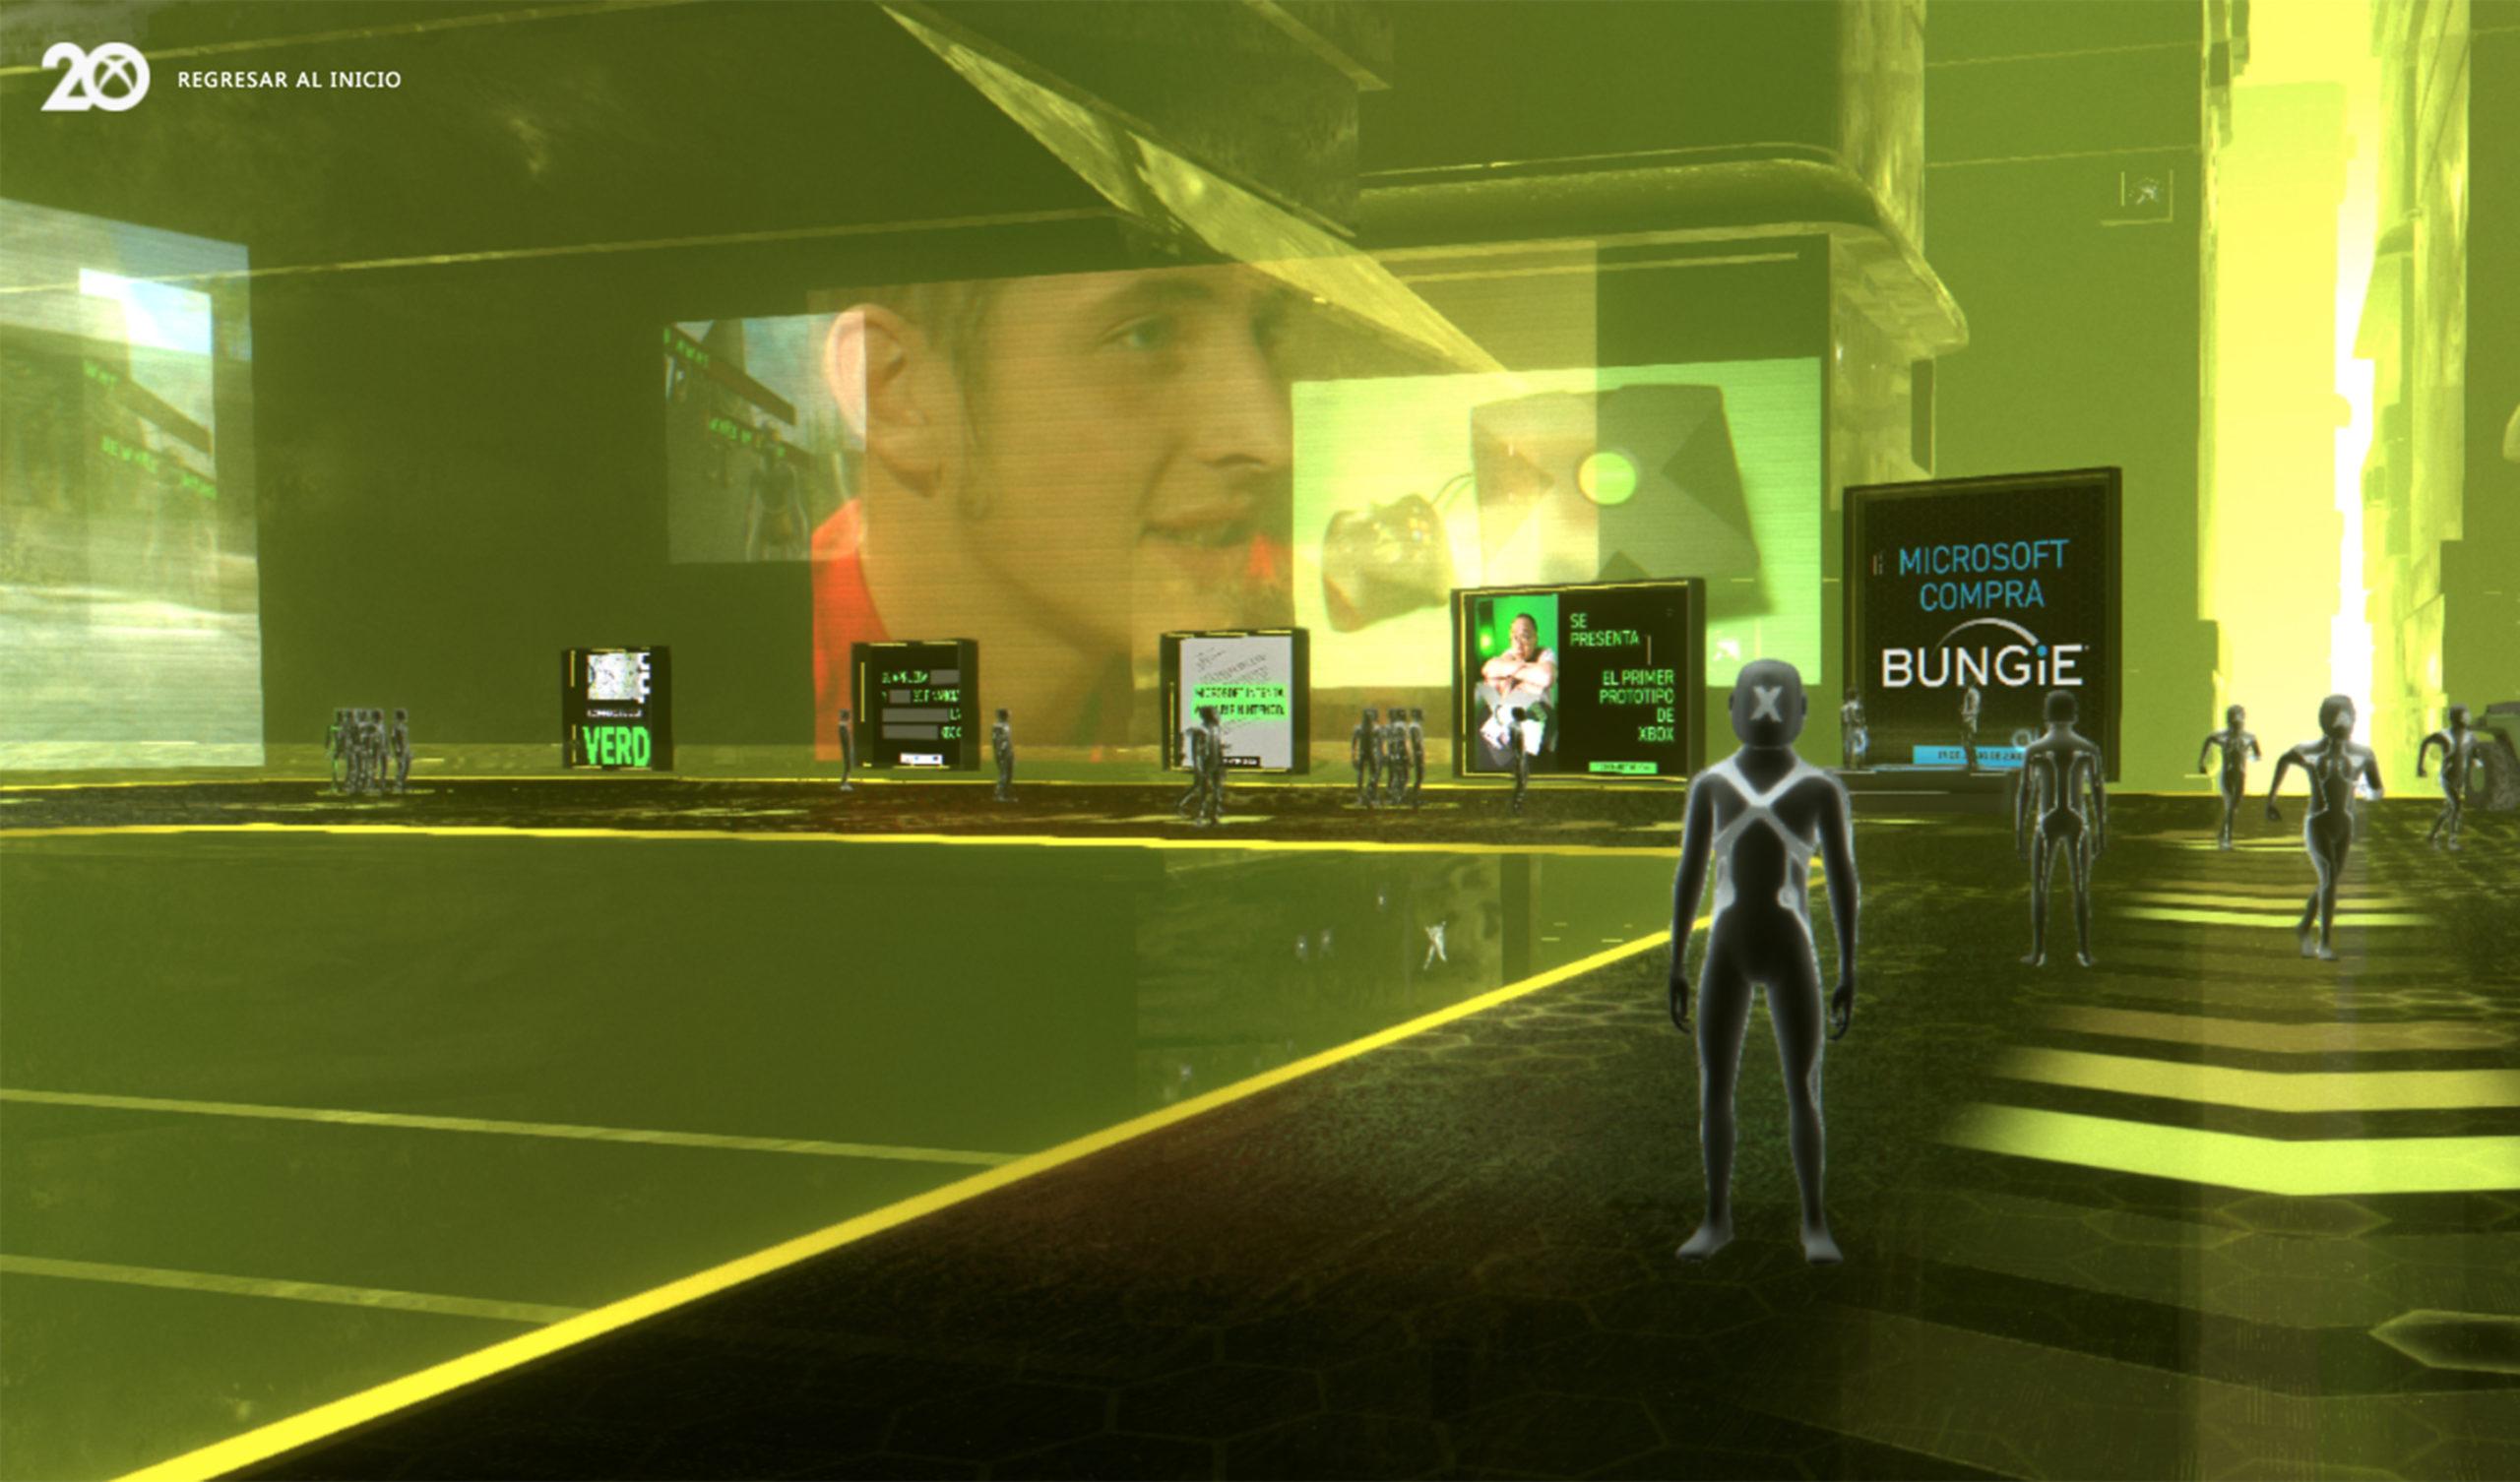 La interfície del museu virtual d'Xbox.